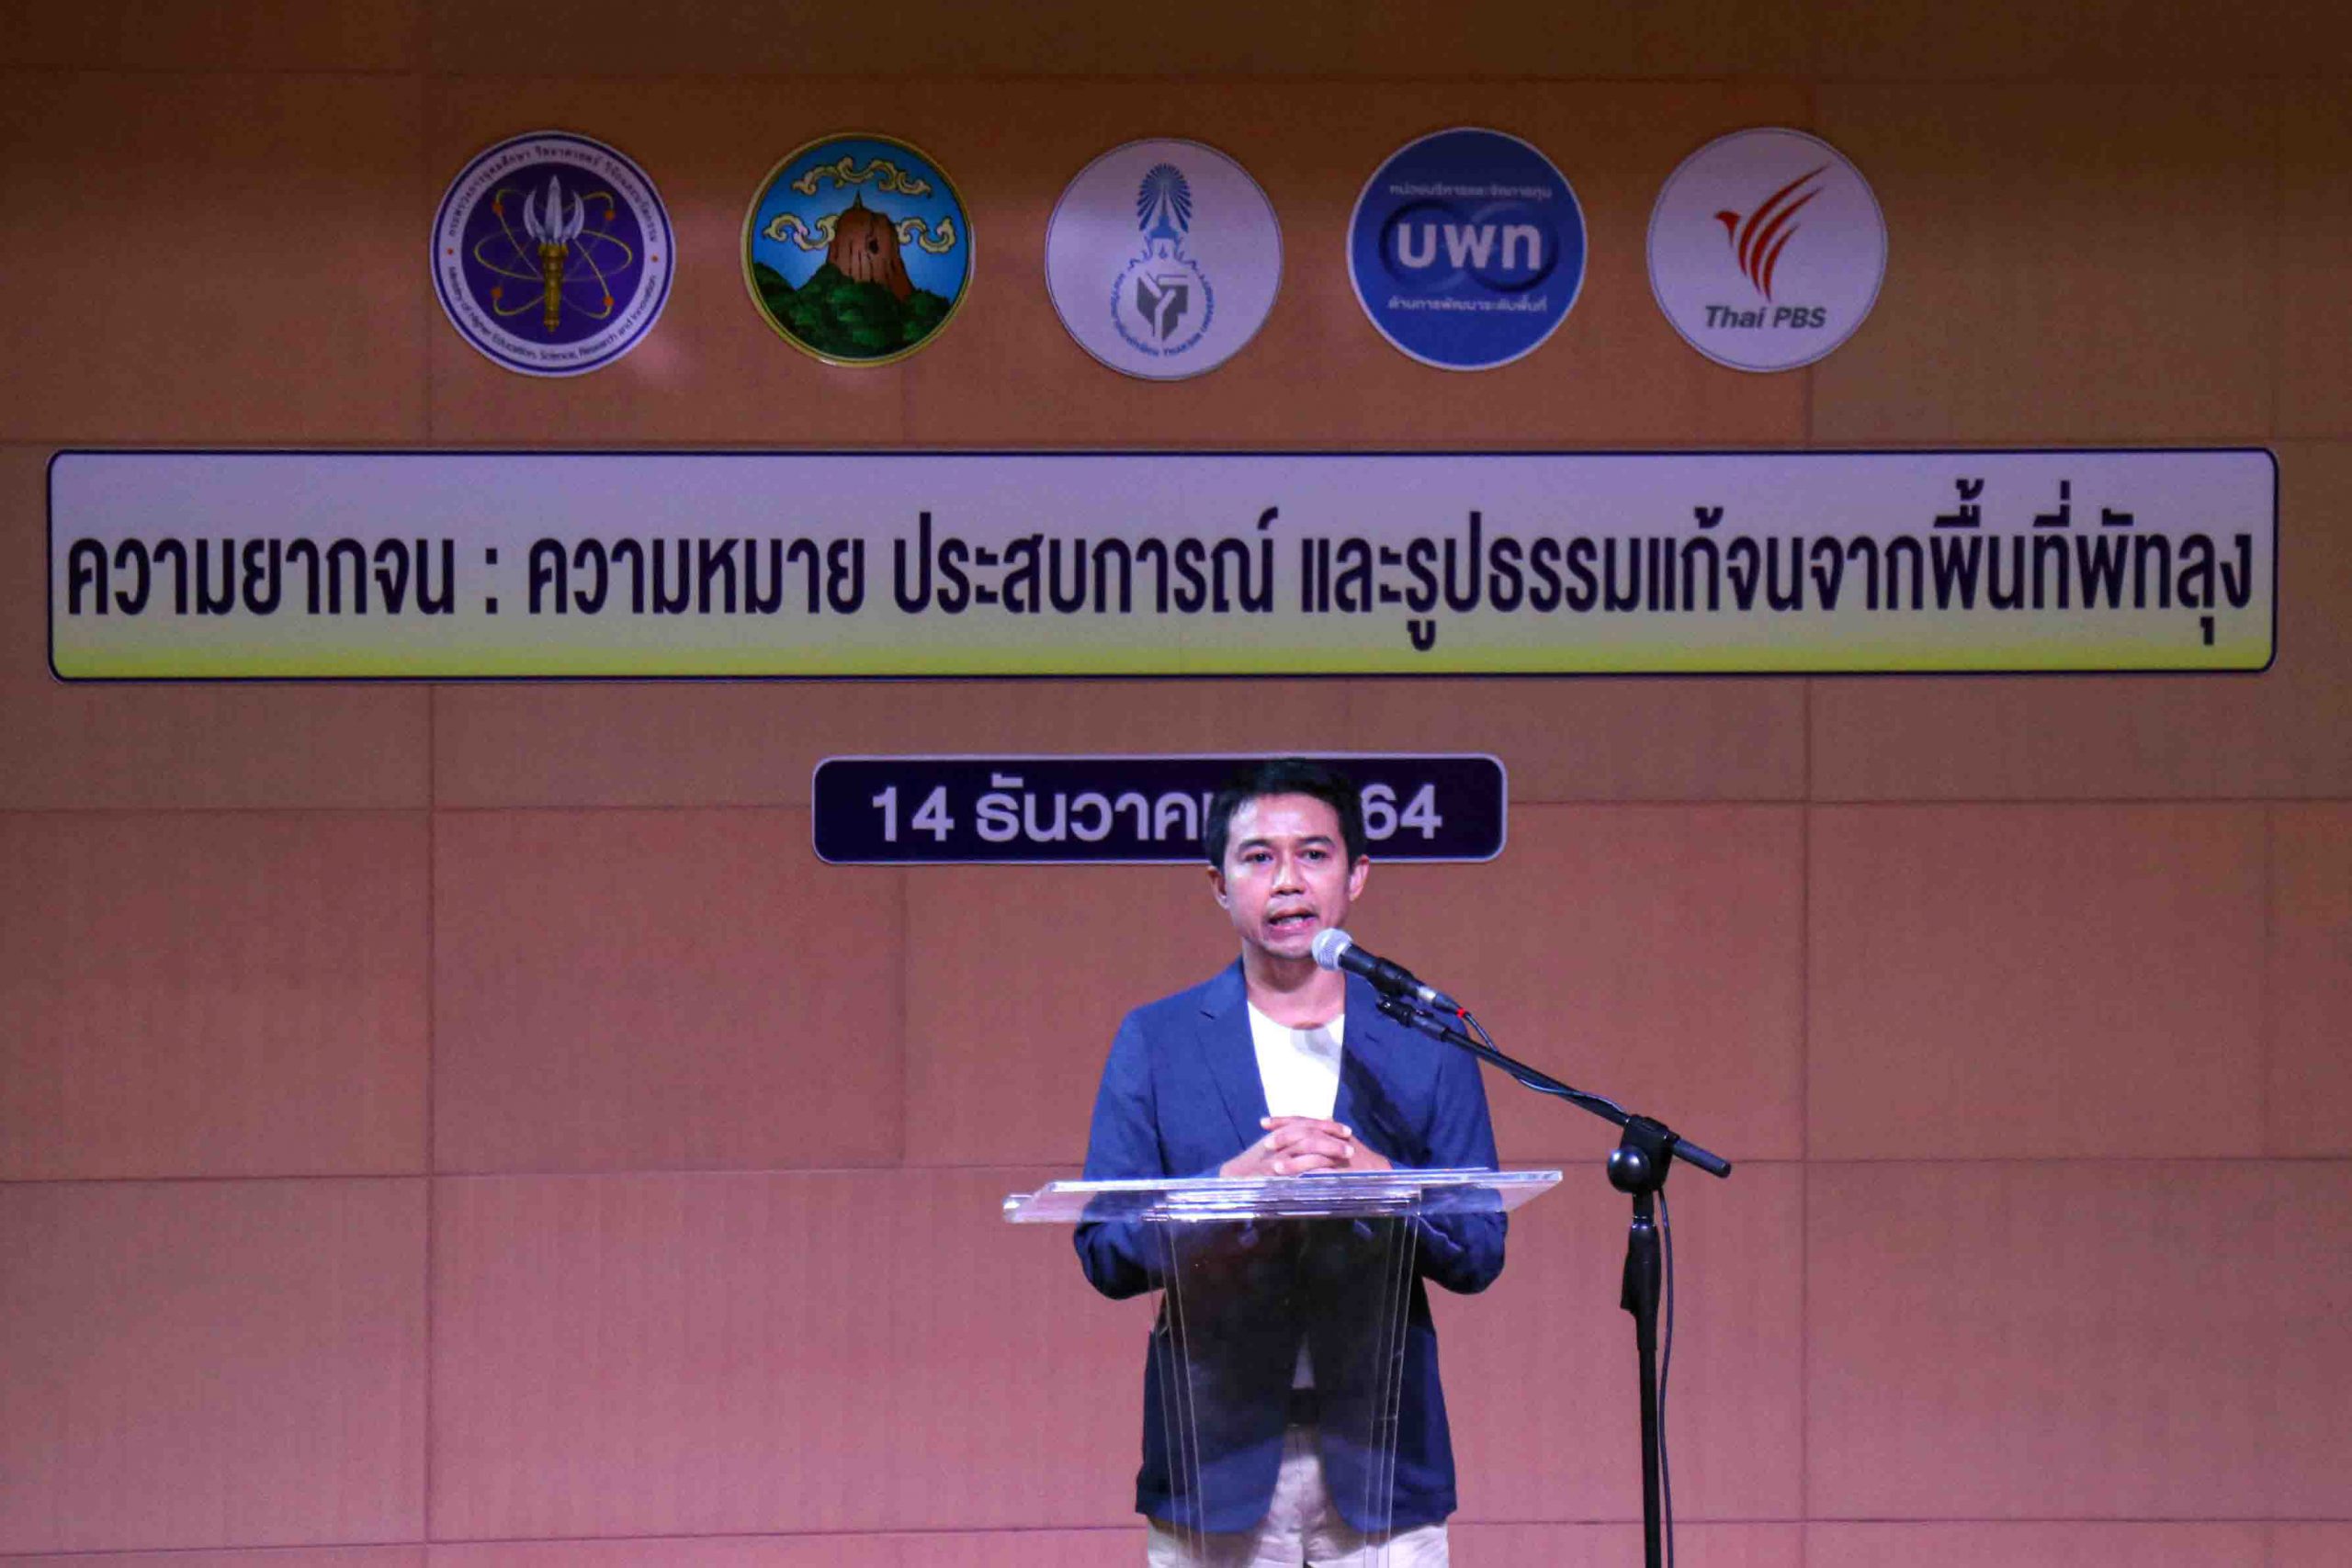 ม.ทักษิณ ร่วมภาคีเครือข่ายและไทยพีบีเอส เปิดเวทีสื่อสาธารณะ ระดมความคิดพัฒนาพัทลุงโมเดล